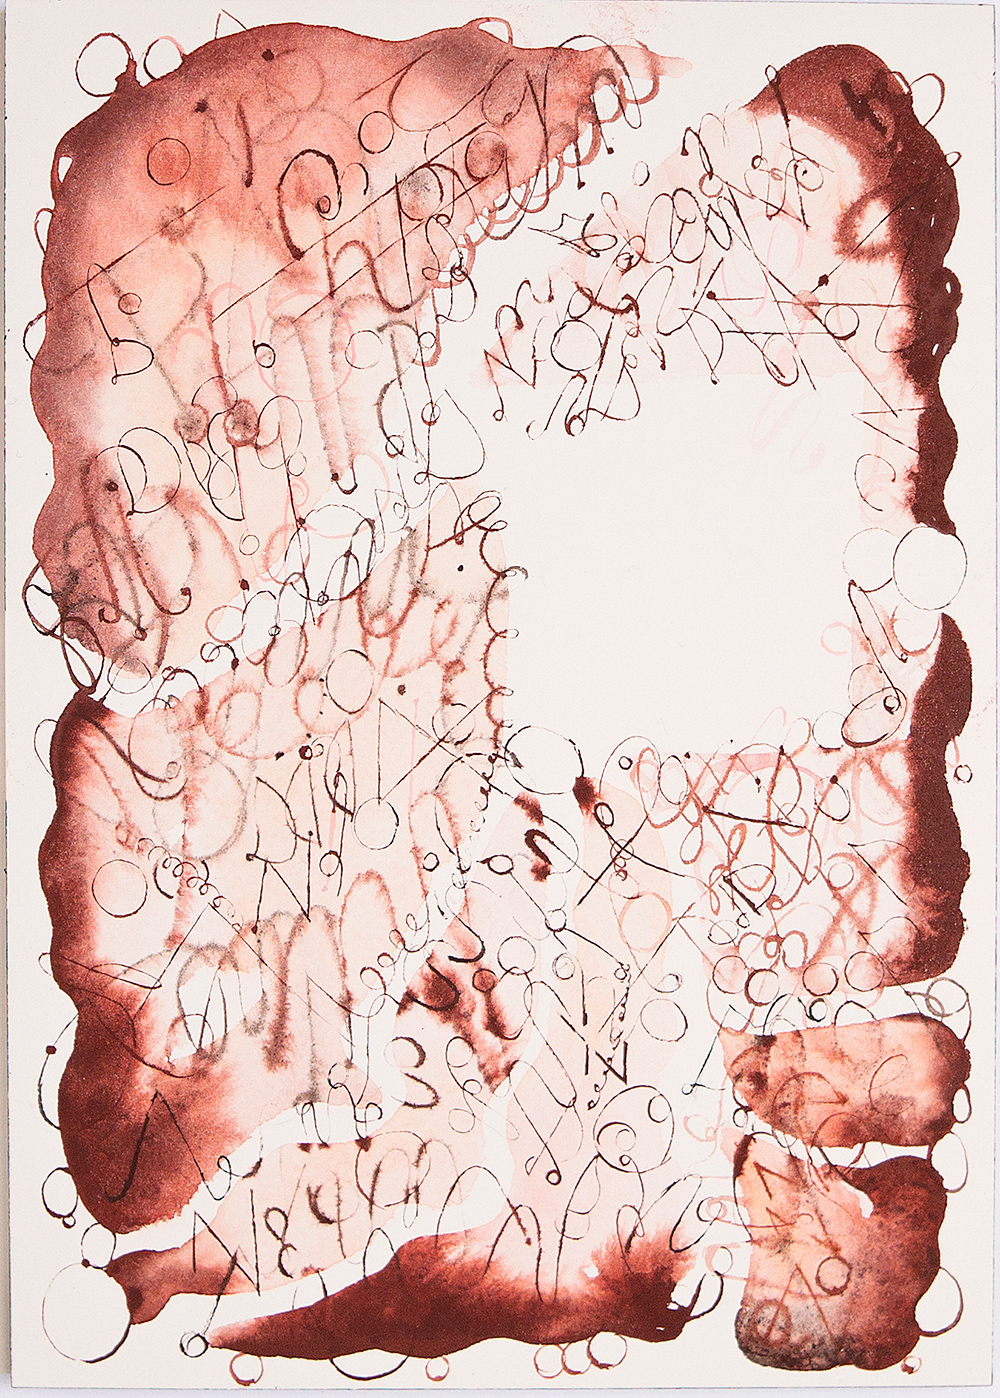 青木陵子 Ryoko Aoki 1973- 日本 動植物や日常の断片、幾何学模様などをイメージの連鎖で描き、その素描を組み合わせた作品を制作。 伊藤存 Zon Ito 1971- 日本 刺繍で描く絵画作品をはじめとして、アニメーション、ドローイング、彫刻作品を制作。 ジグマー・ポルケ Sigmar Polke 1941-2010 ドイツ 様々な素材や様式を自由に組み合わせた作品で、印刷文化におけるイメージや絵画そのものについて再考することを試みる。 ナムジュン・パイク Nam June Paik 1932-2006 韓国／アメリカ TVやビデオなどのメディアを初めてアートに取り入れた「メディア・アート」の第一人者。その作品にはテクノロジーと東洋の思想の融合が見られる。 ヨーゼフ・ボイス Joseph Beuys 1921-1986 ドイツ 『社会彫刻』という概念を提唱し、20 世紀後半以降の様々な芸術に影響を与えた。「誰もが芸術家」はボイスの有名な言葉。 オラファー・エリアソン Olafur Eliasson 1967- デンマーク 空間、光、水、霧などの自然界の要素を用いて、人間の知覚の仕組みや認識を問い直すような作品を制作。 アンディ･ウォーホル Andy Warhol 1928-1987 アメリカ 1950年代、商業イラストを描く一方、ポップ・アートの作品制作を試みる。大衆文化のイコンを題材にした作品で、圧倒的な支持を得た。 キース・へリング Keith Haring 1958-1990 アメリカ 1980年代初頭、ニューヨークのイースト・ヴィレッジから現れ、瞬く間に世界にその名が知れたグラフィティ・アートの先駆者。 ジョナサン・ボロフスキー Jonathan Borofsky 1942- アメリカ 夢を題材に、コミカルな非現実のふりをしながら、社会問題や人間の命題を凝縮し潜ませた作品を制作。 クリスト Christo 1935-2020 ブルガリア 巨大な建造物や自然をまるごと「梱包」してしまう大規模なインスタレーションによって、芸術とは何かを問いかけた。 ジュリアン・シュナーベル Julian Schnabel 1951- アメリカ 1980年代のニュー・ペインティングの旗手。壊れた陶器の皿をキャンバスに貼付けた巨大な絵画で一躍有名となる。近年は映画監督としても活躍。 マルセル･ブロータス Marcel Broodthaers 1924-1976 ベルギー ルネ・マグリットの影響を強く受け、アートの在り方を探りつづけた。身近で伝統的な素材を用い、類いまれな繊細さとアイロニーで作品を表現。 河原温 On Kawara 1933-2014　日本 コンセプチュアル・アートを代表する作家。1966年より、制作された日の日付だけを描いた『日付絵画』シリーズを制作。 有馬かおる Kaoru Arima 1969- 日本 1996年、住んでいたアパートを「キワマリ荘」と改名、そこでギャラリーを開設し話題を呼ぶ。新聞紙を支持体とするなど実験的な絵画制作に取り組む。 さわひらき Hiraki Sawa 1977- 日本 大量の飛行機が部屋を飛び回るなど、日常空間に本来あるはずのないイメージを登場させ、幻想的な映像作品を制作。